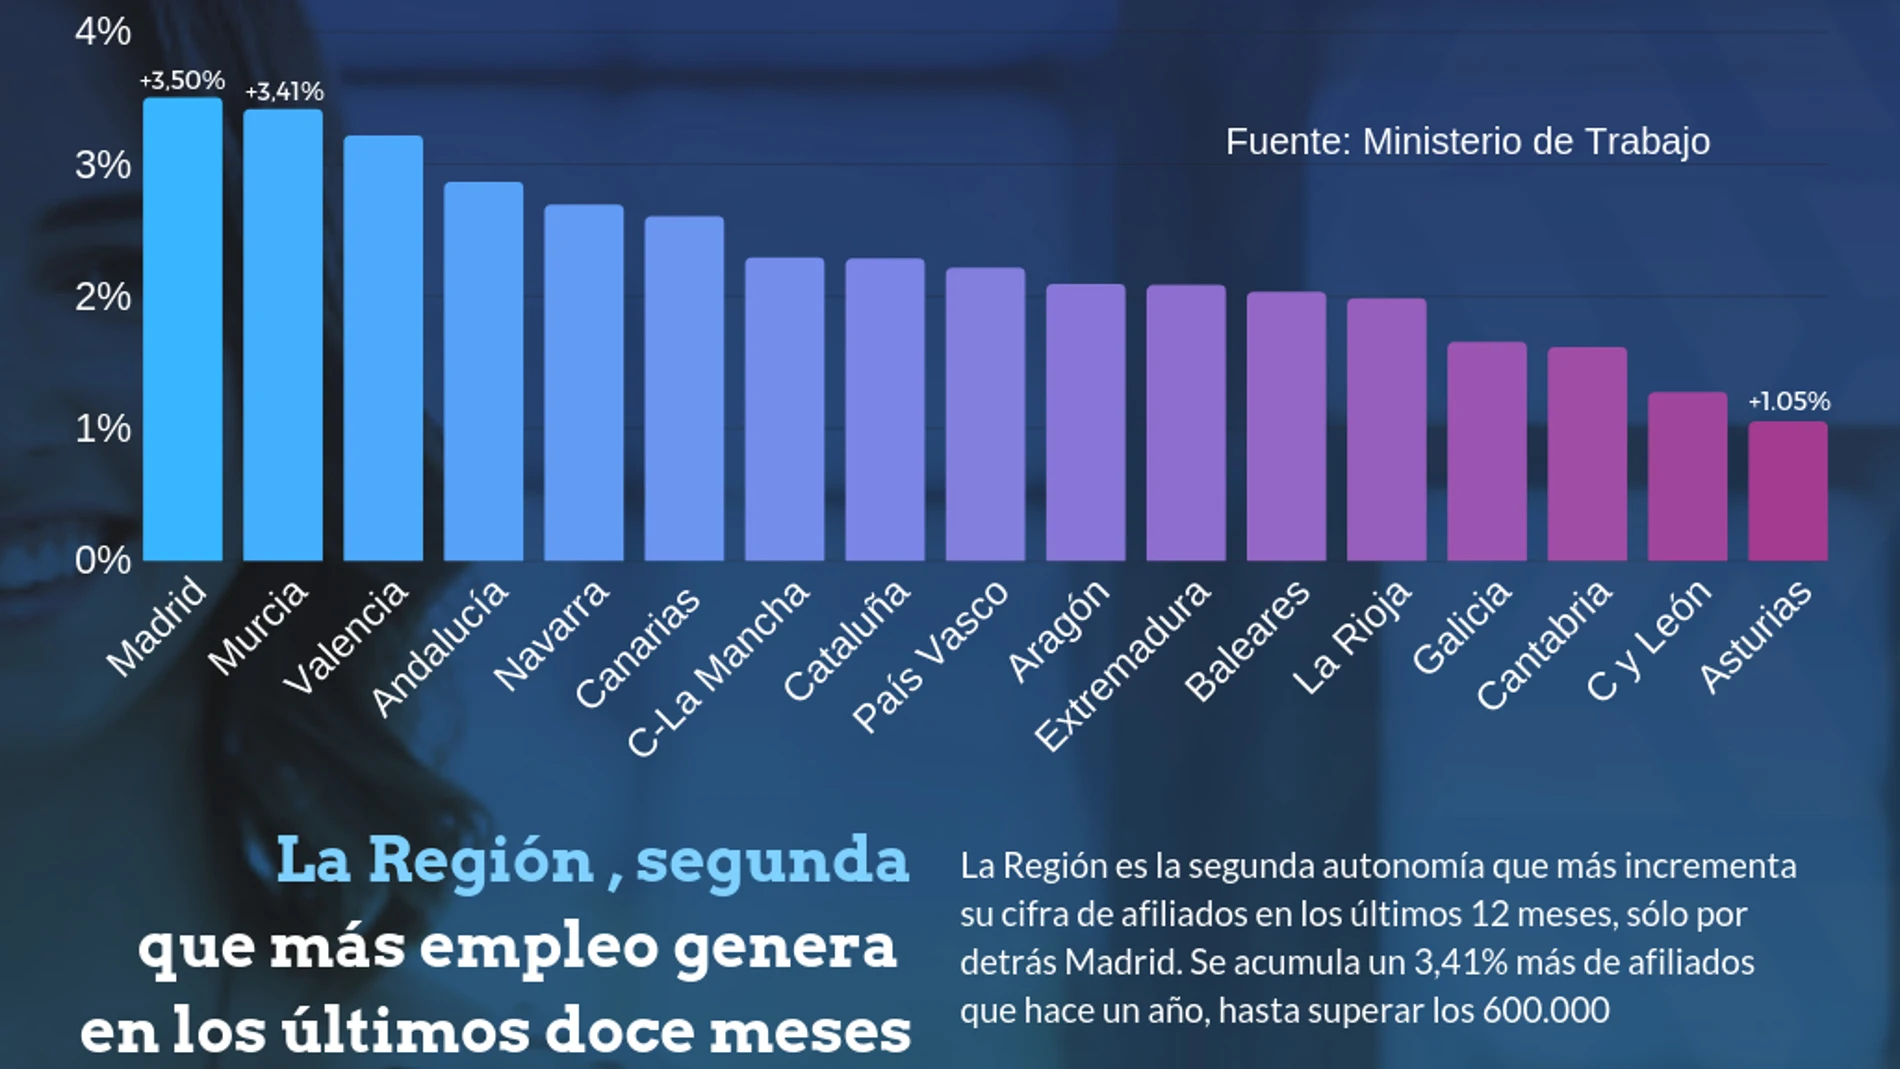 Los datos de creación de empleo reflejan que la Región se sitúa en el segundo lugar con respecto al resto de autonomías, solo precedida por Madrid que la supera en una décima con respecto al último año. LA RAZÓN